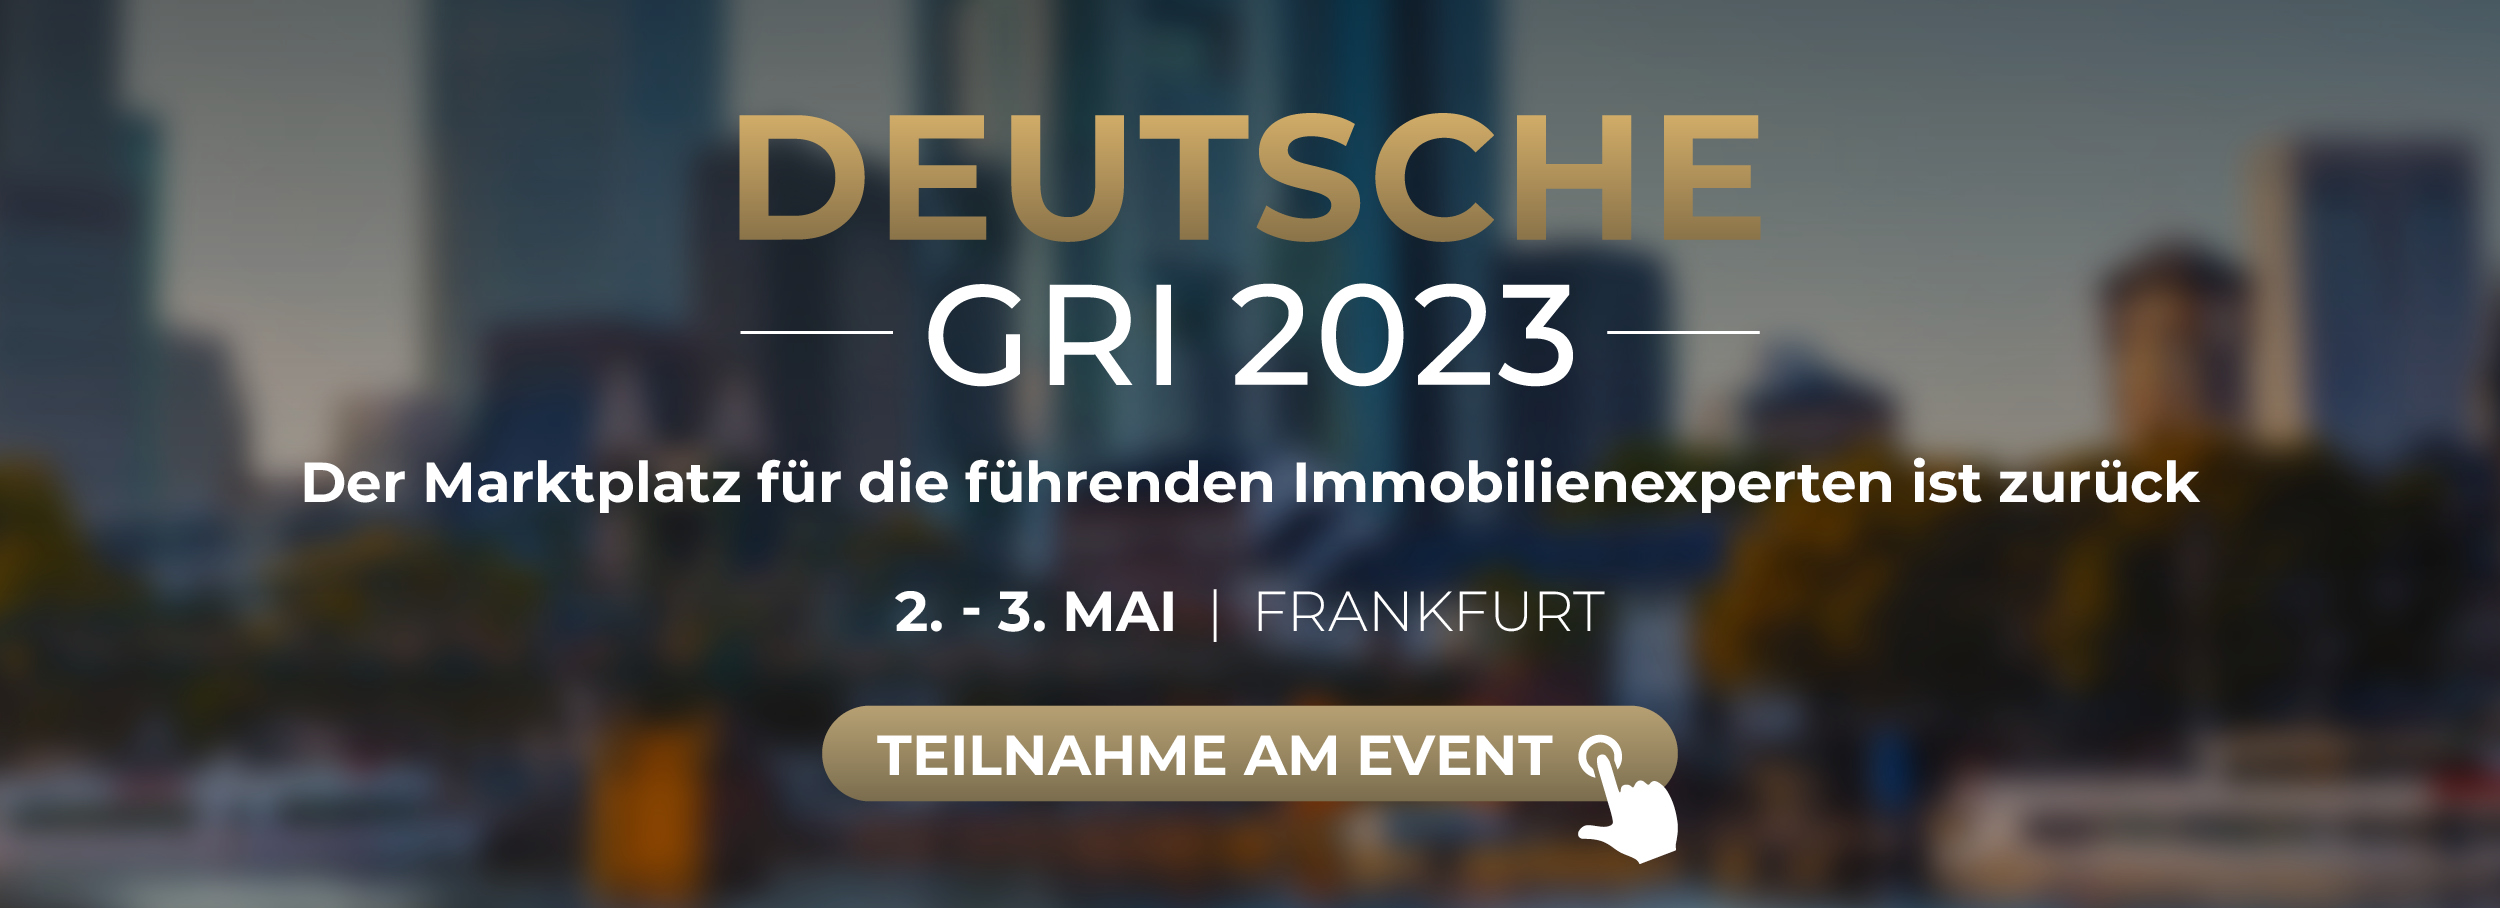 Deutsche GRI 2023